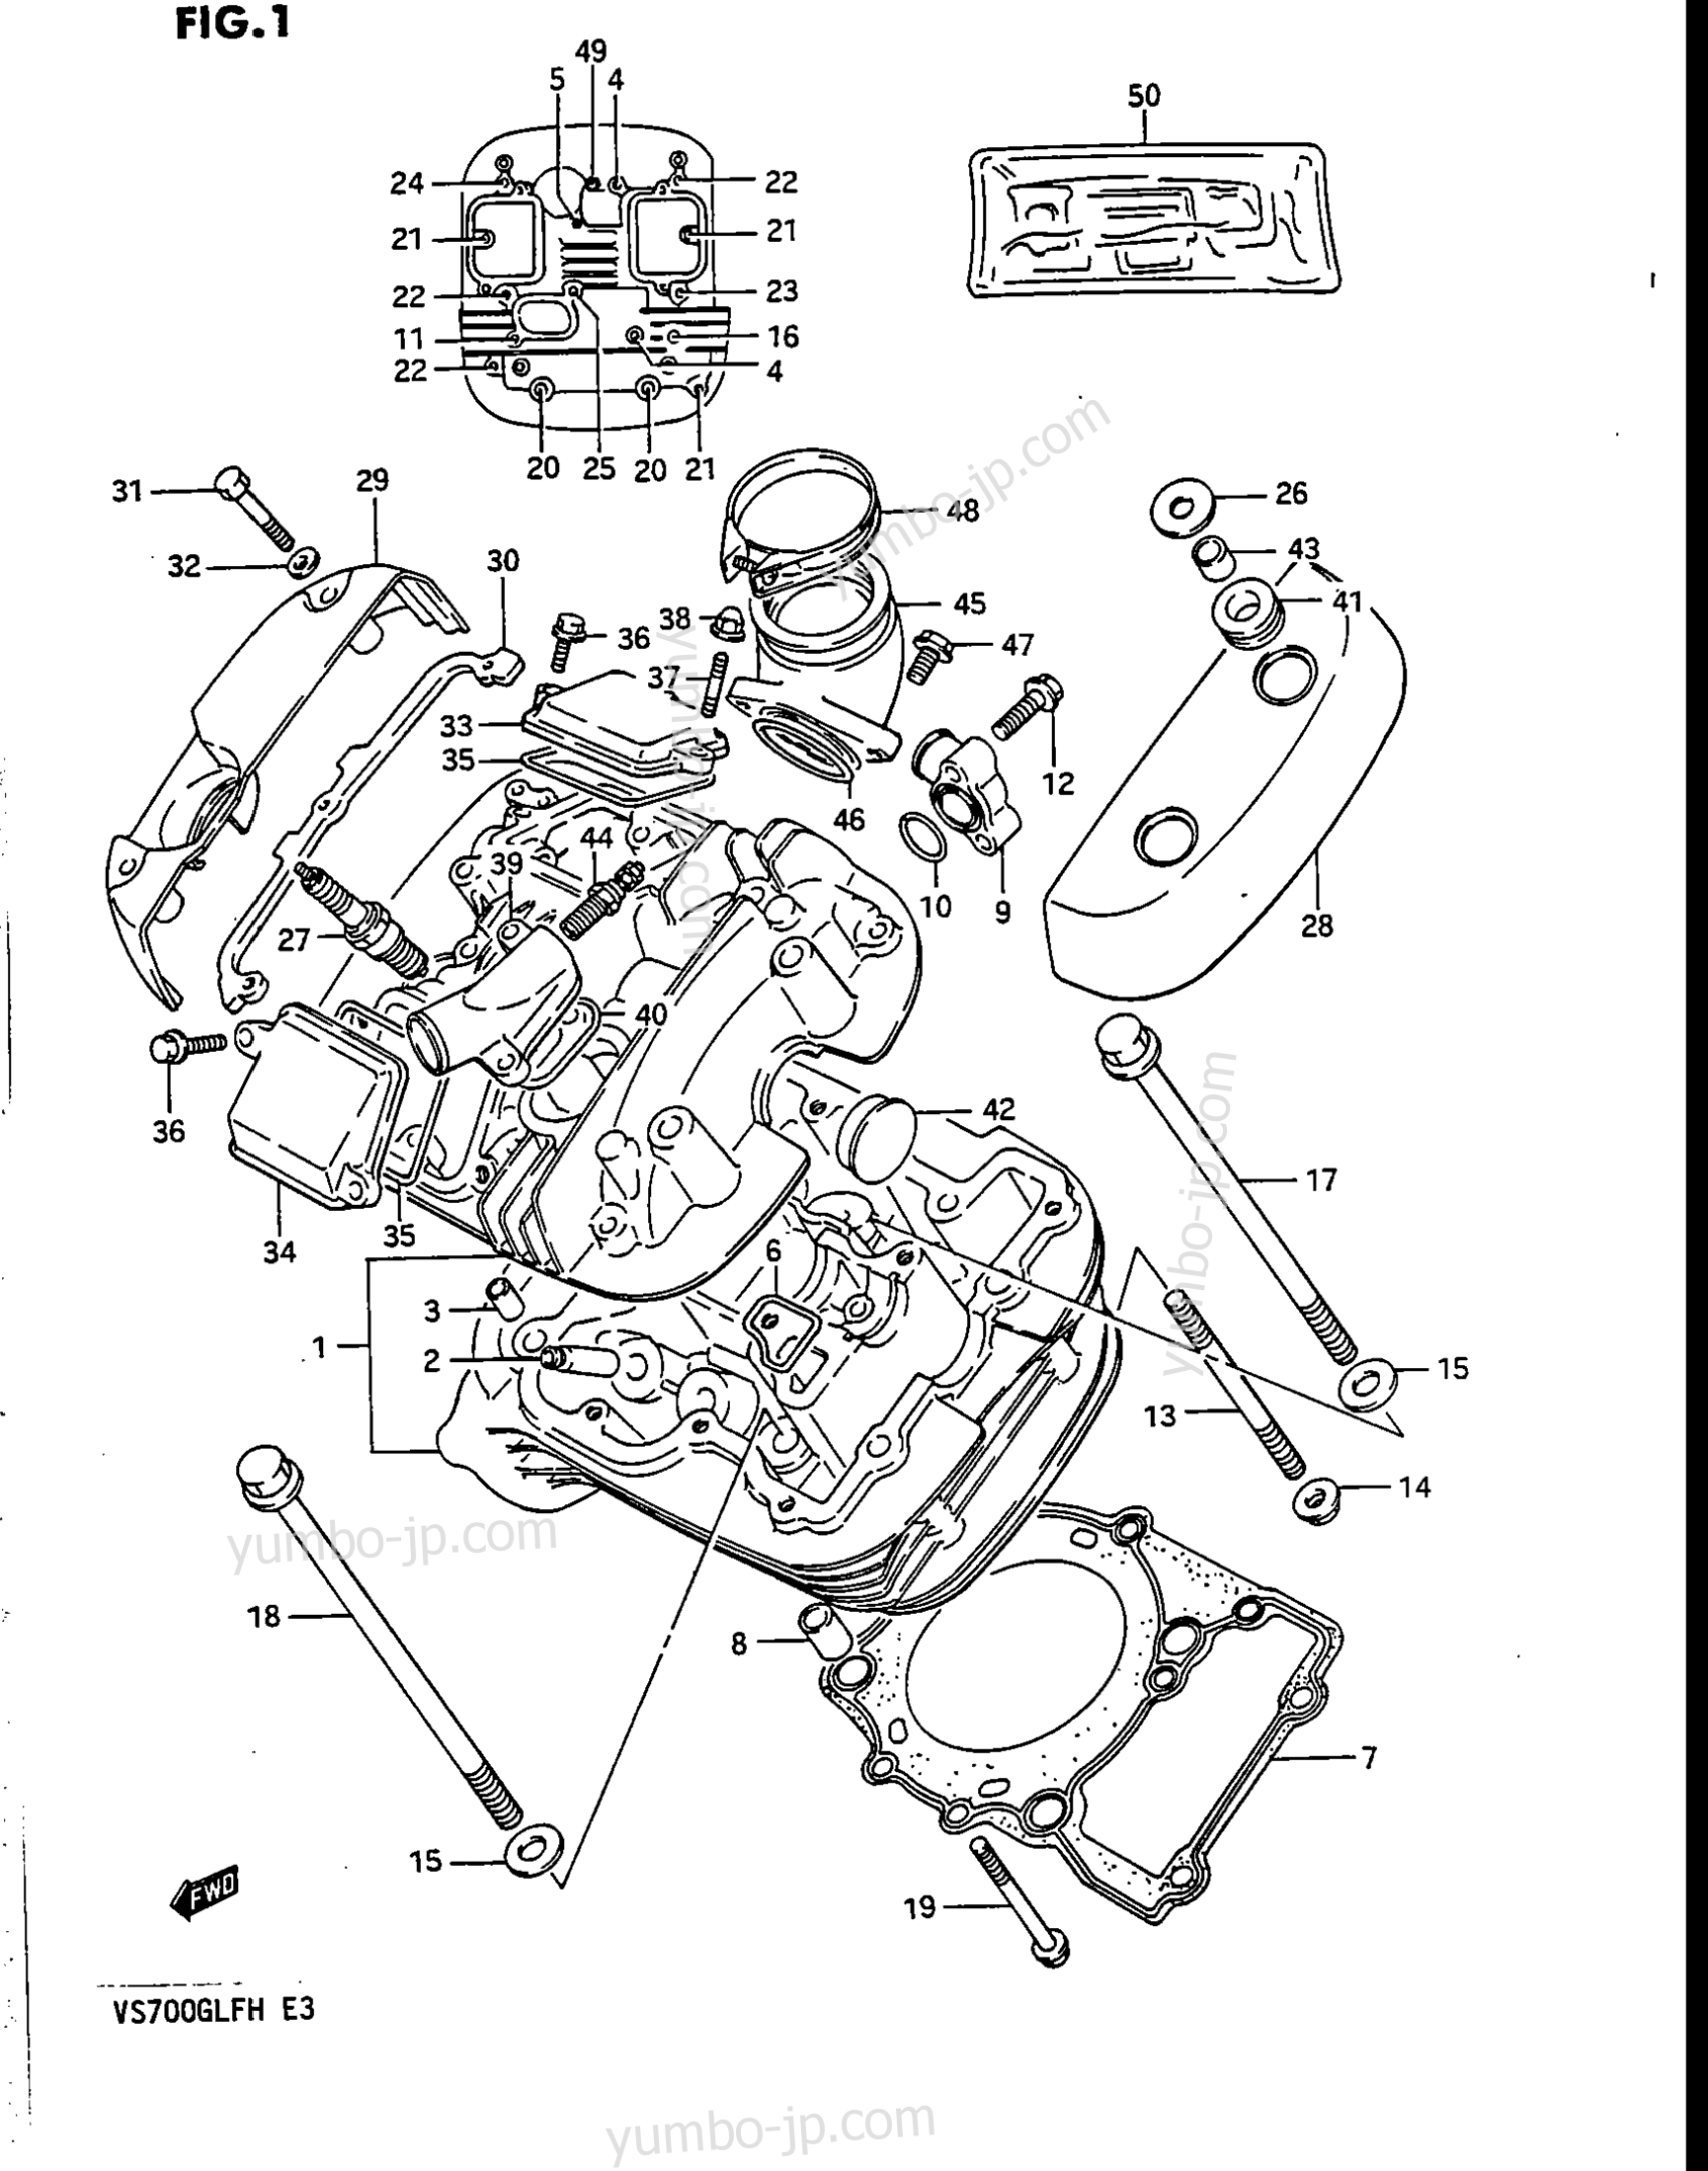 CYLINDER HEAD (FRONT) for motorcycles SUZUKI Intruder (VS700GLEF) 1986 year